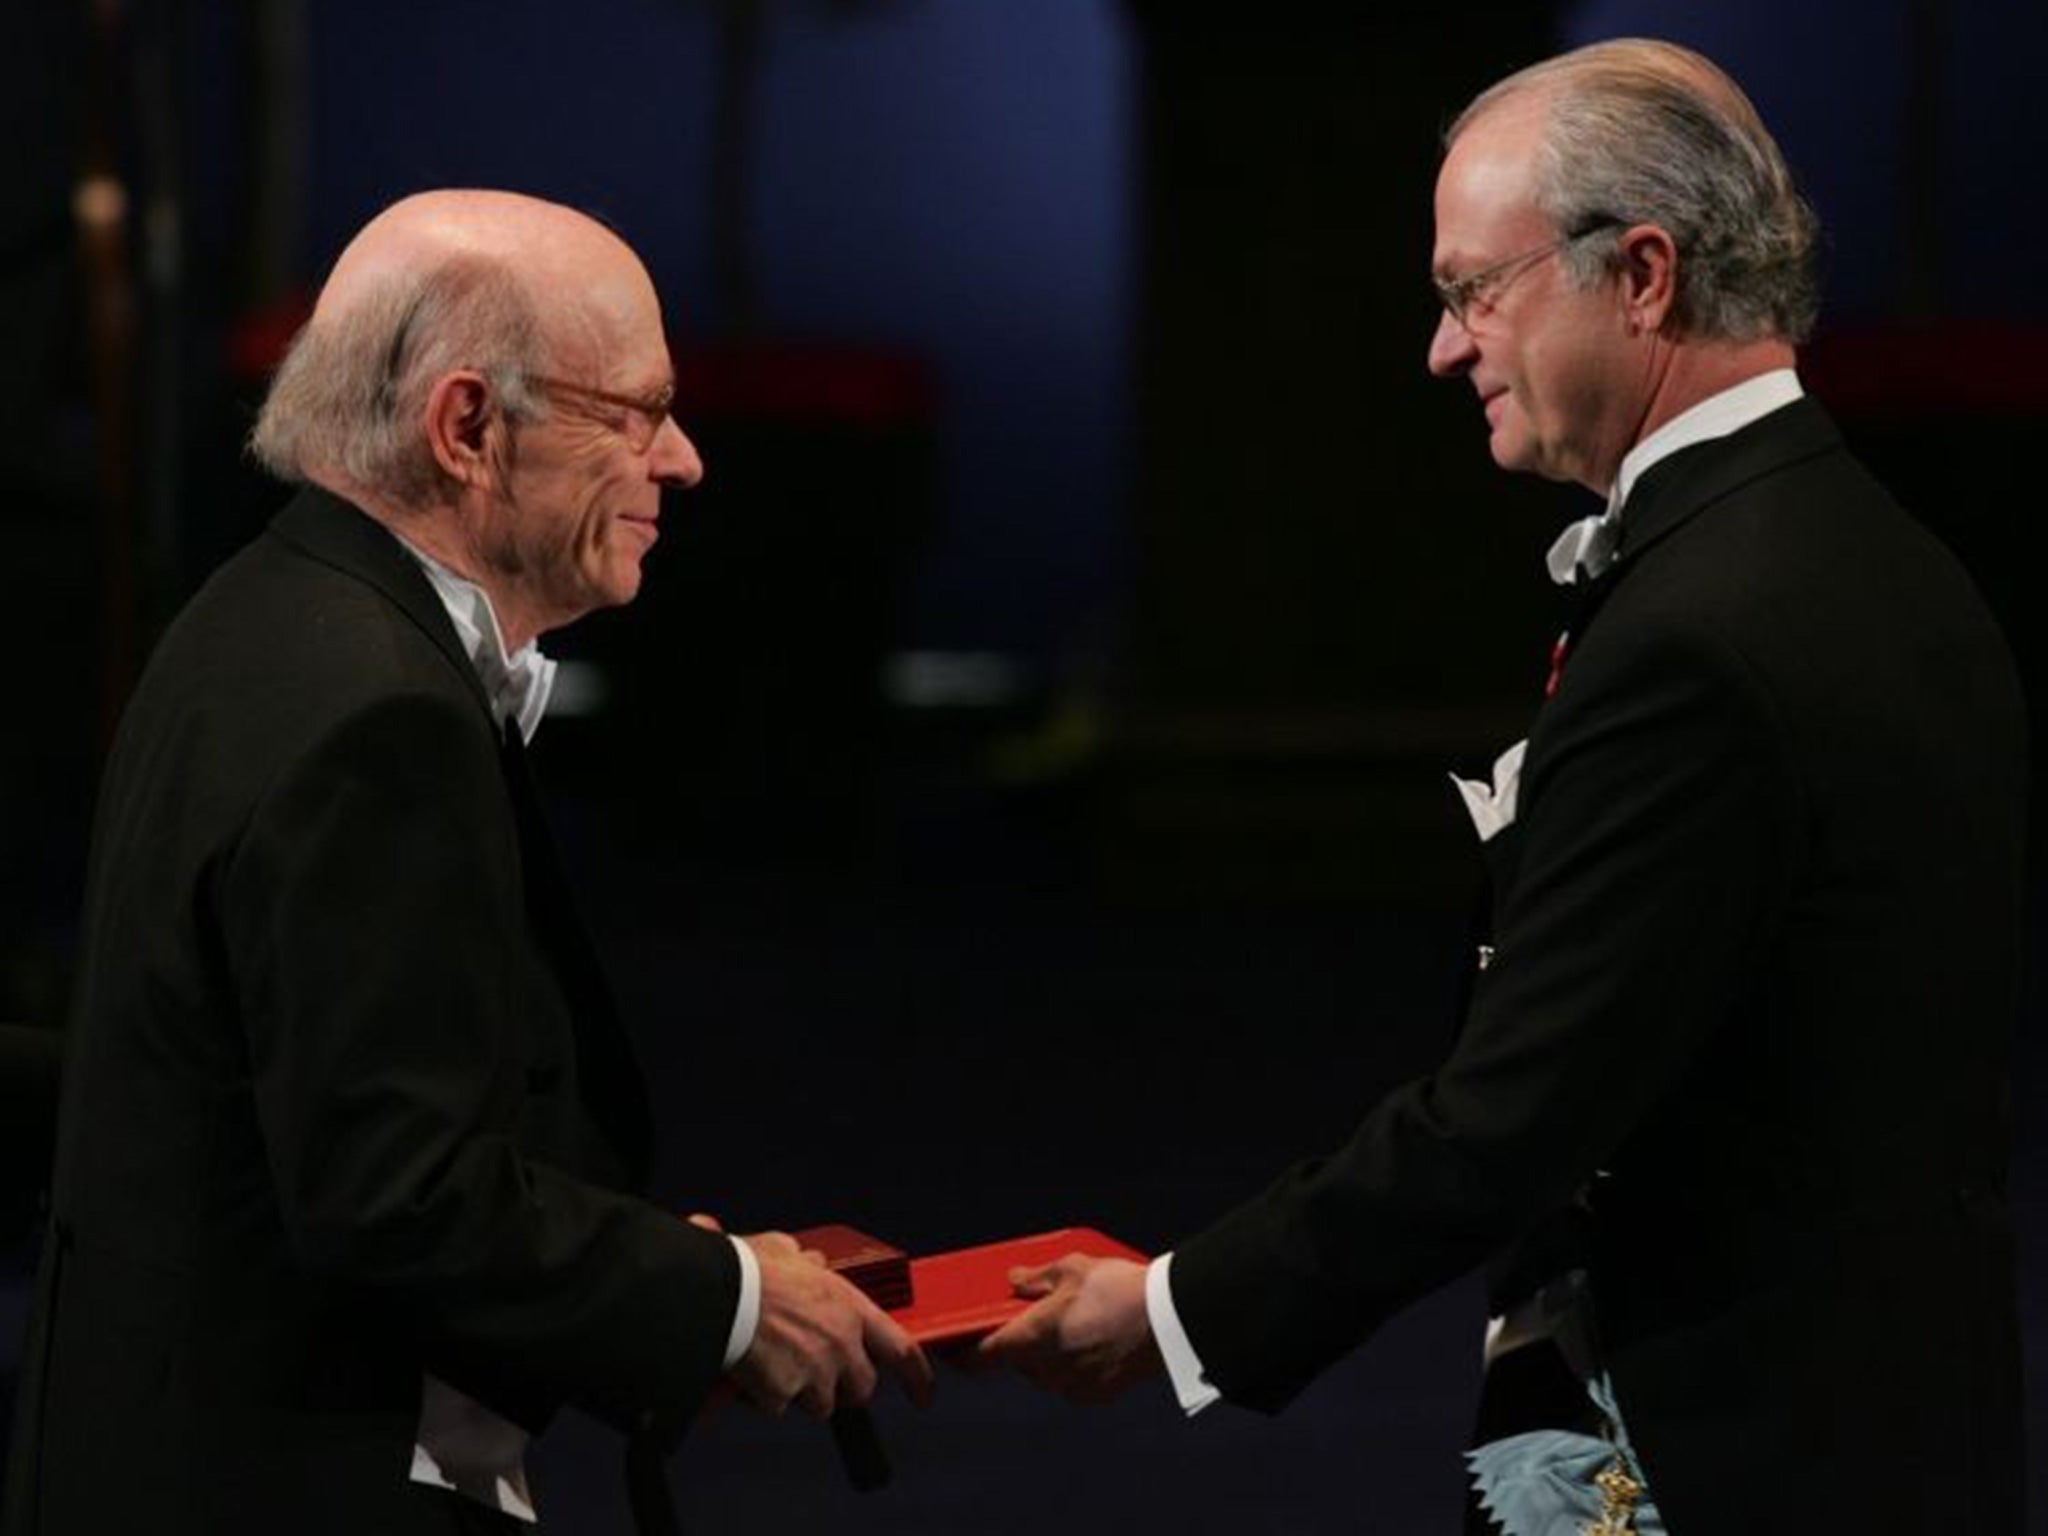 Rose in Stockholm in 2004 receiving his Nobel Prize in Chemistry